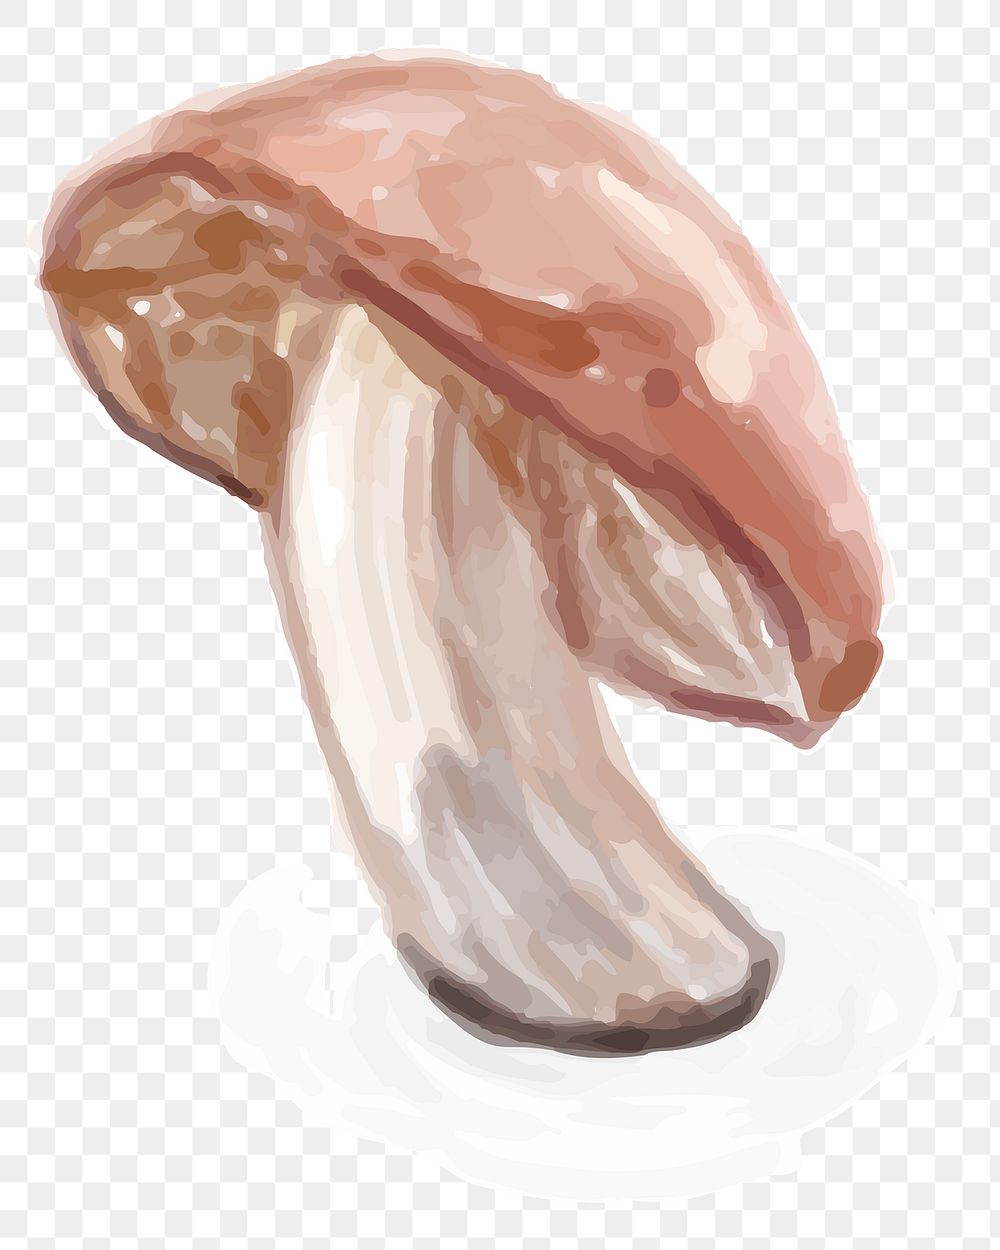 Food mushroom png sticker hand drawn